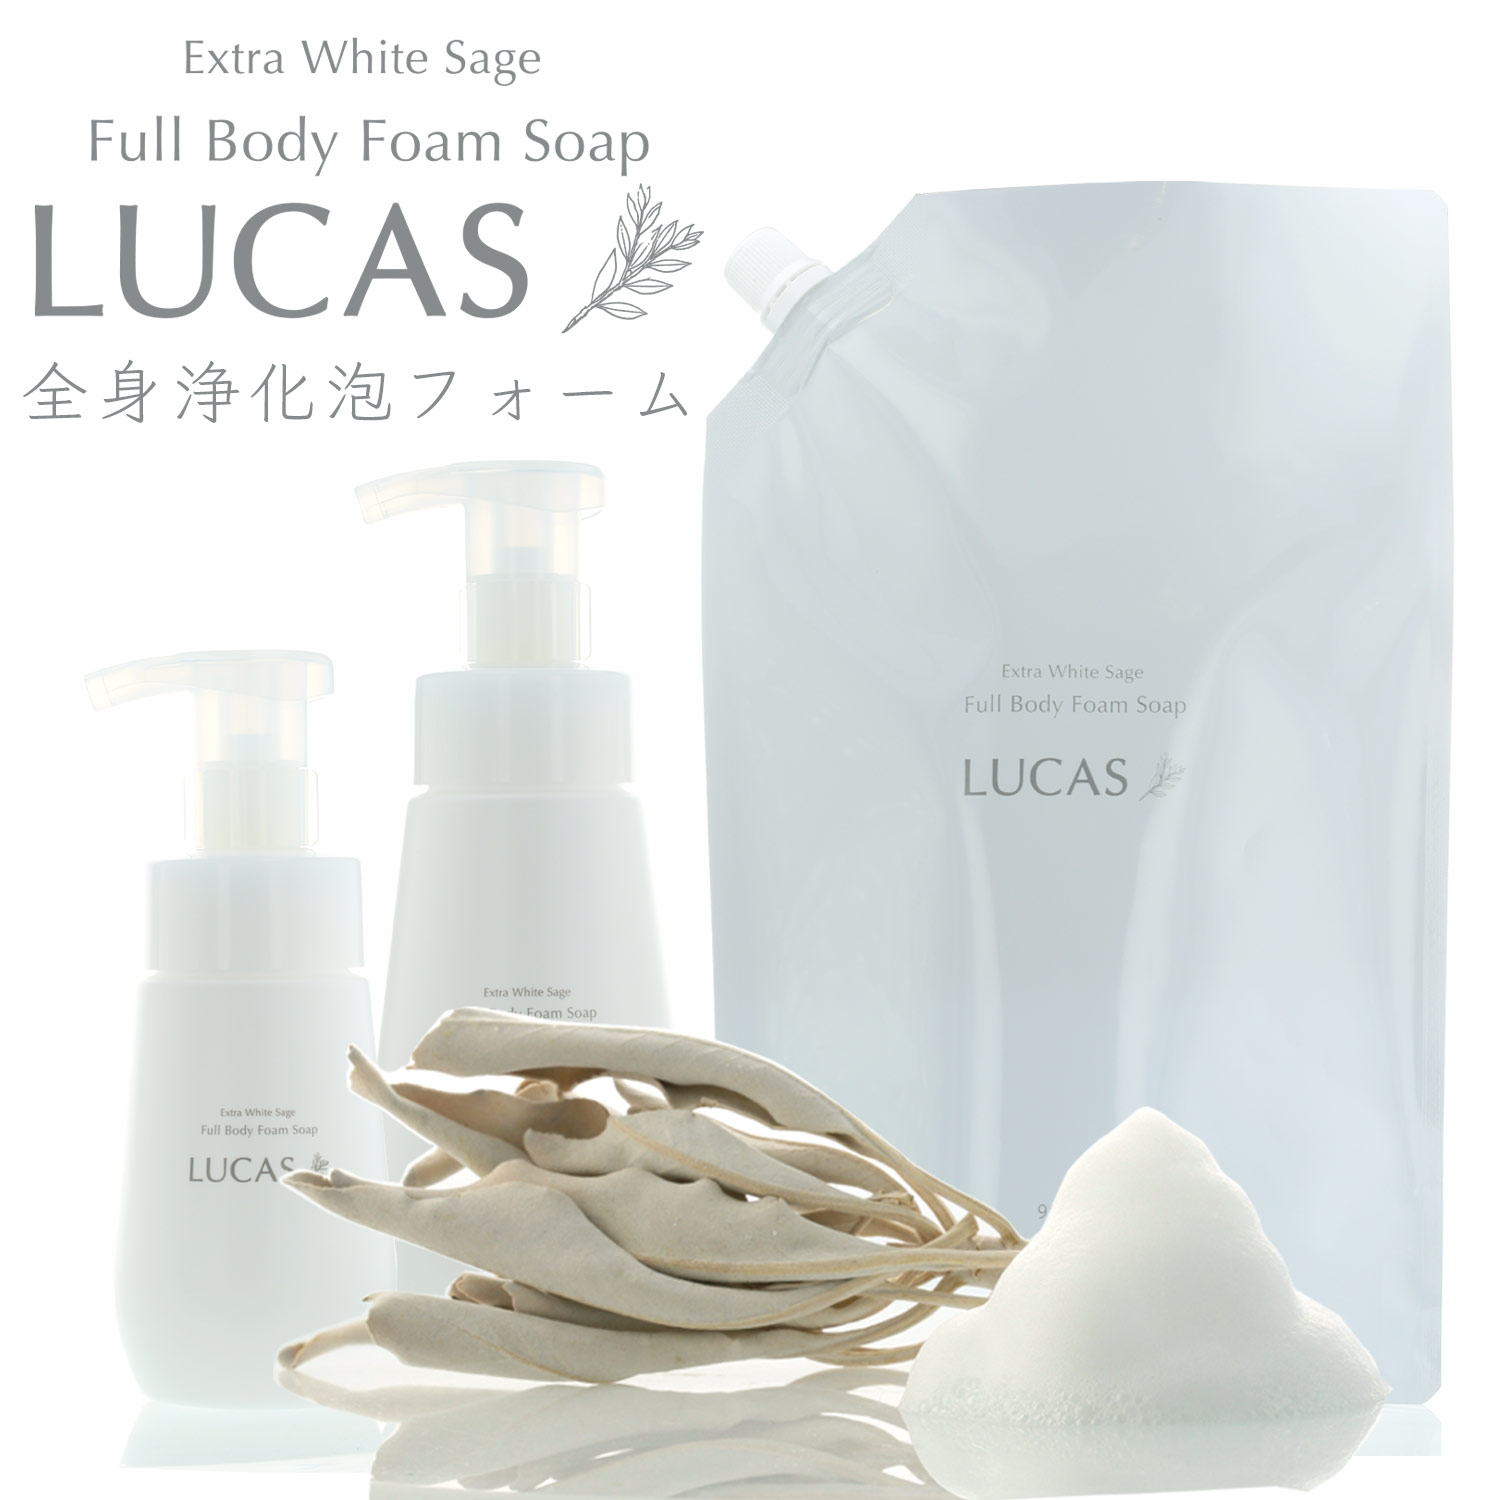 LUCAS ホワイトセージ全身浄化泡ソープ（専用容器２種付き）ホワイトセージエッセンシャルオイル配合。ボディソープとしてお風呂で浄化。手洗い、洗顔にもおすすめ。 クレンズ